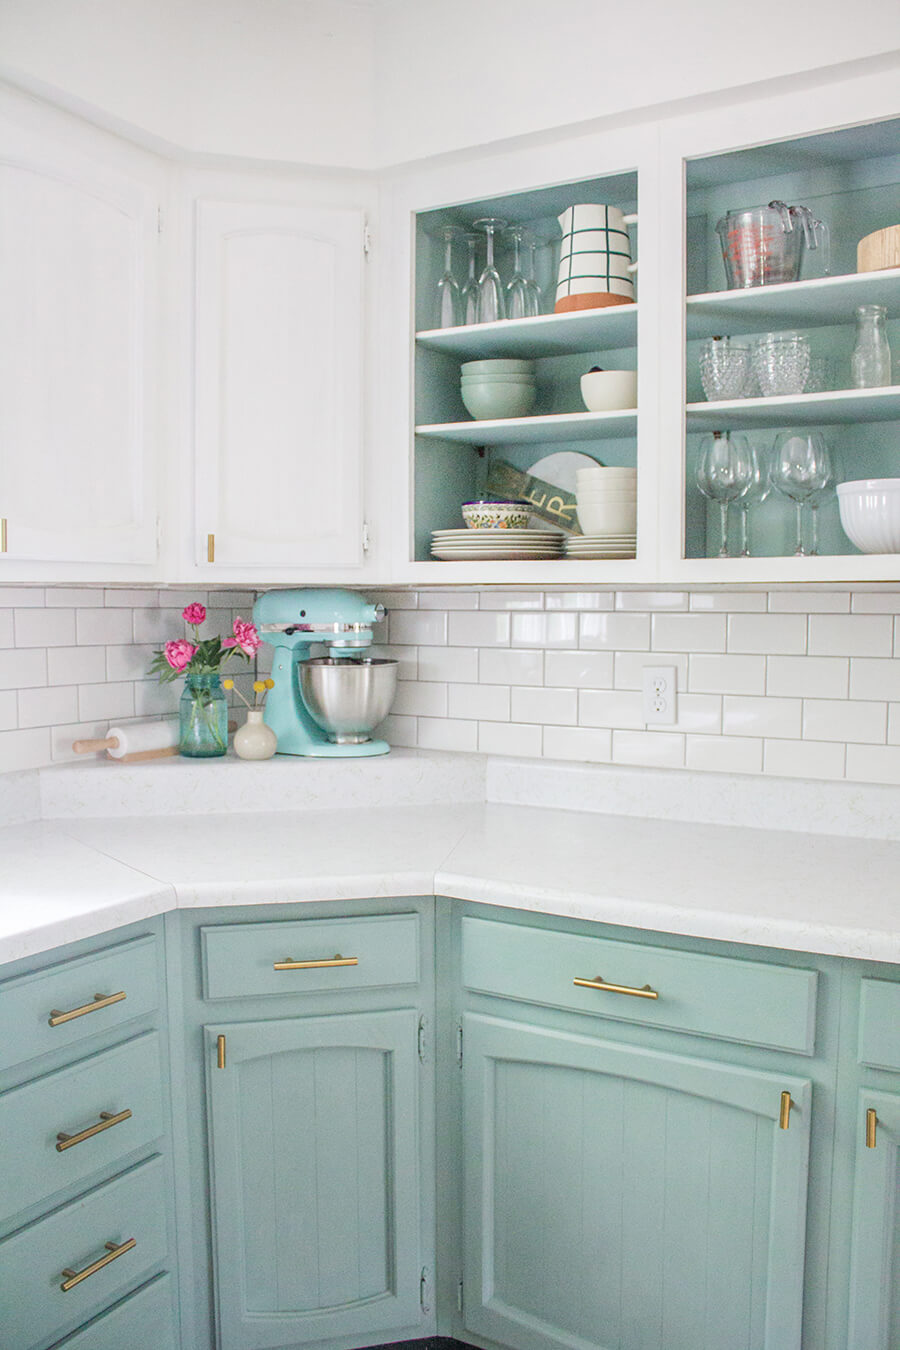 Una cocina de color blanco en que el mueble y el fondo de las vitrinas están pintados del mismo color turquesa pastel.